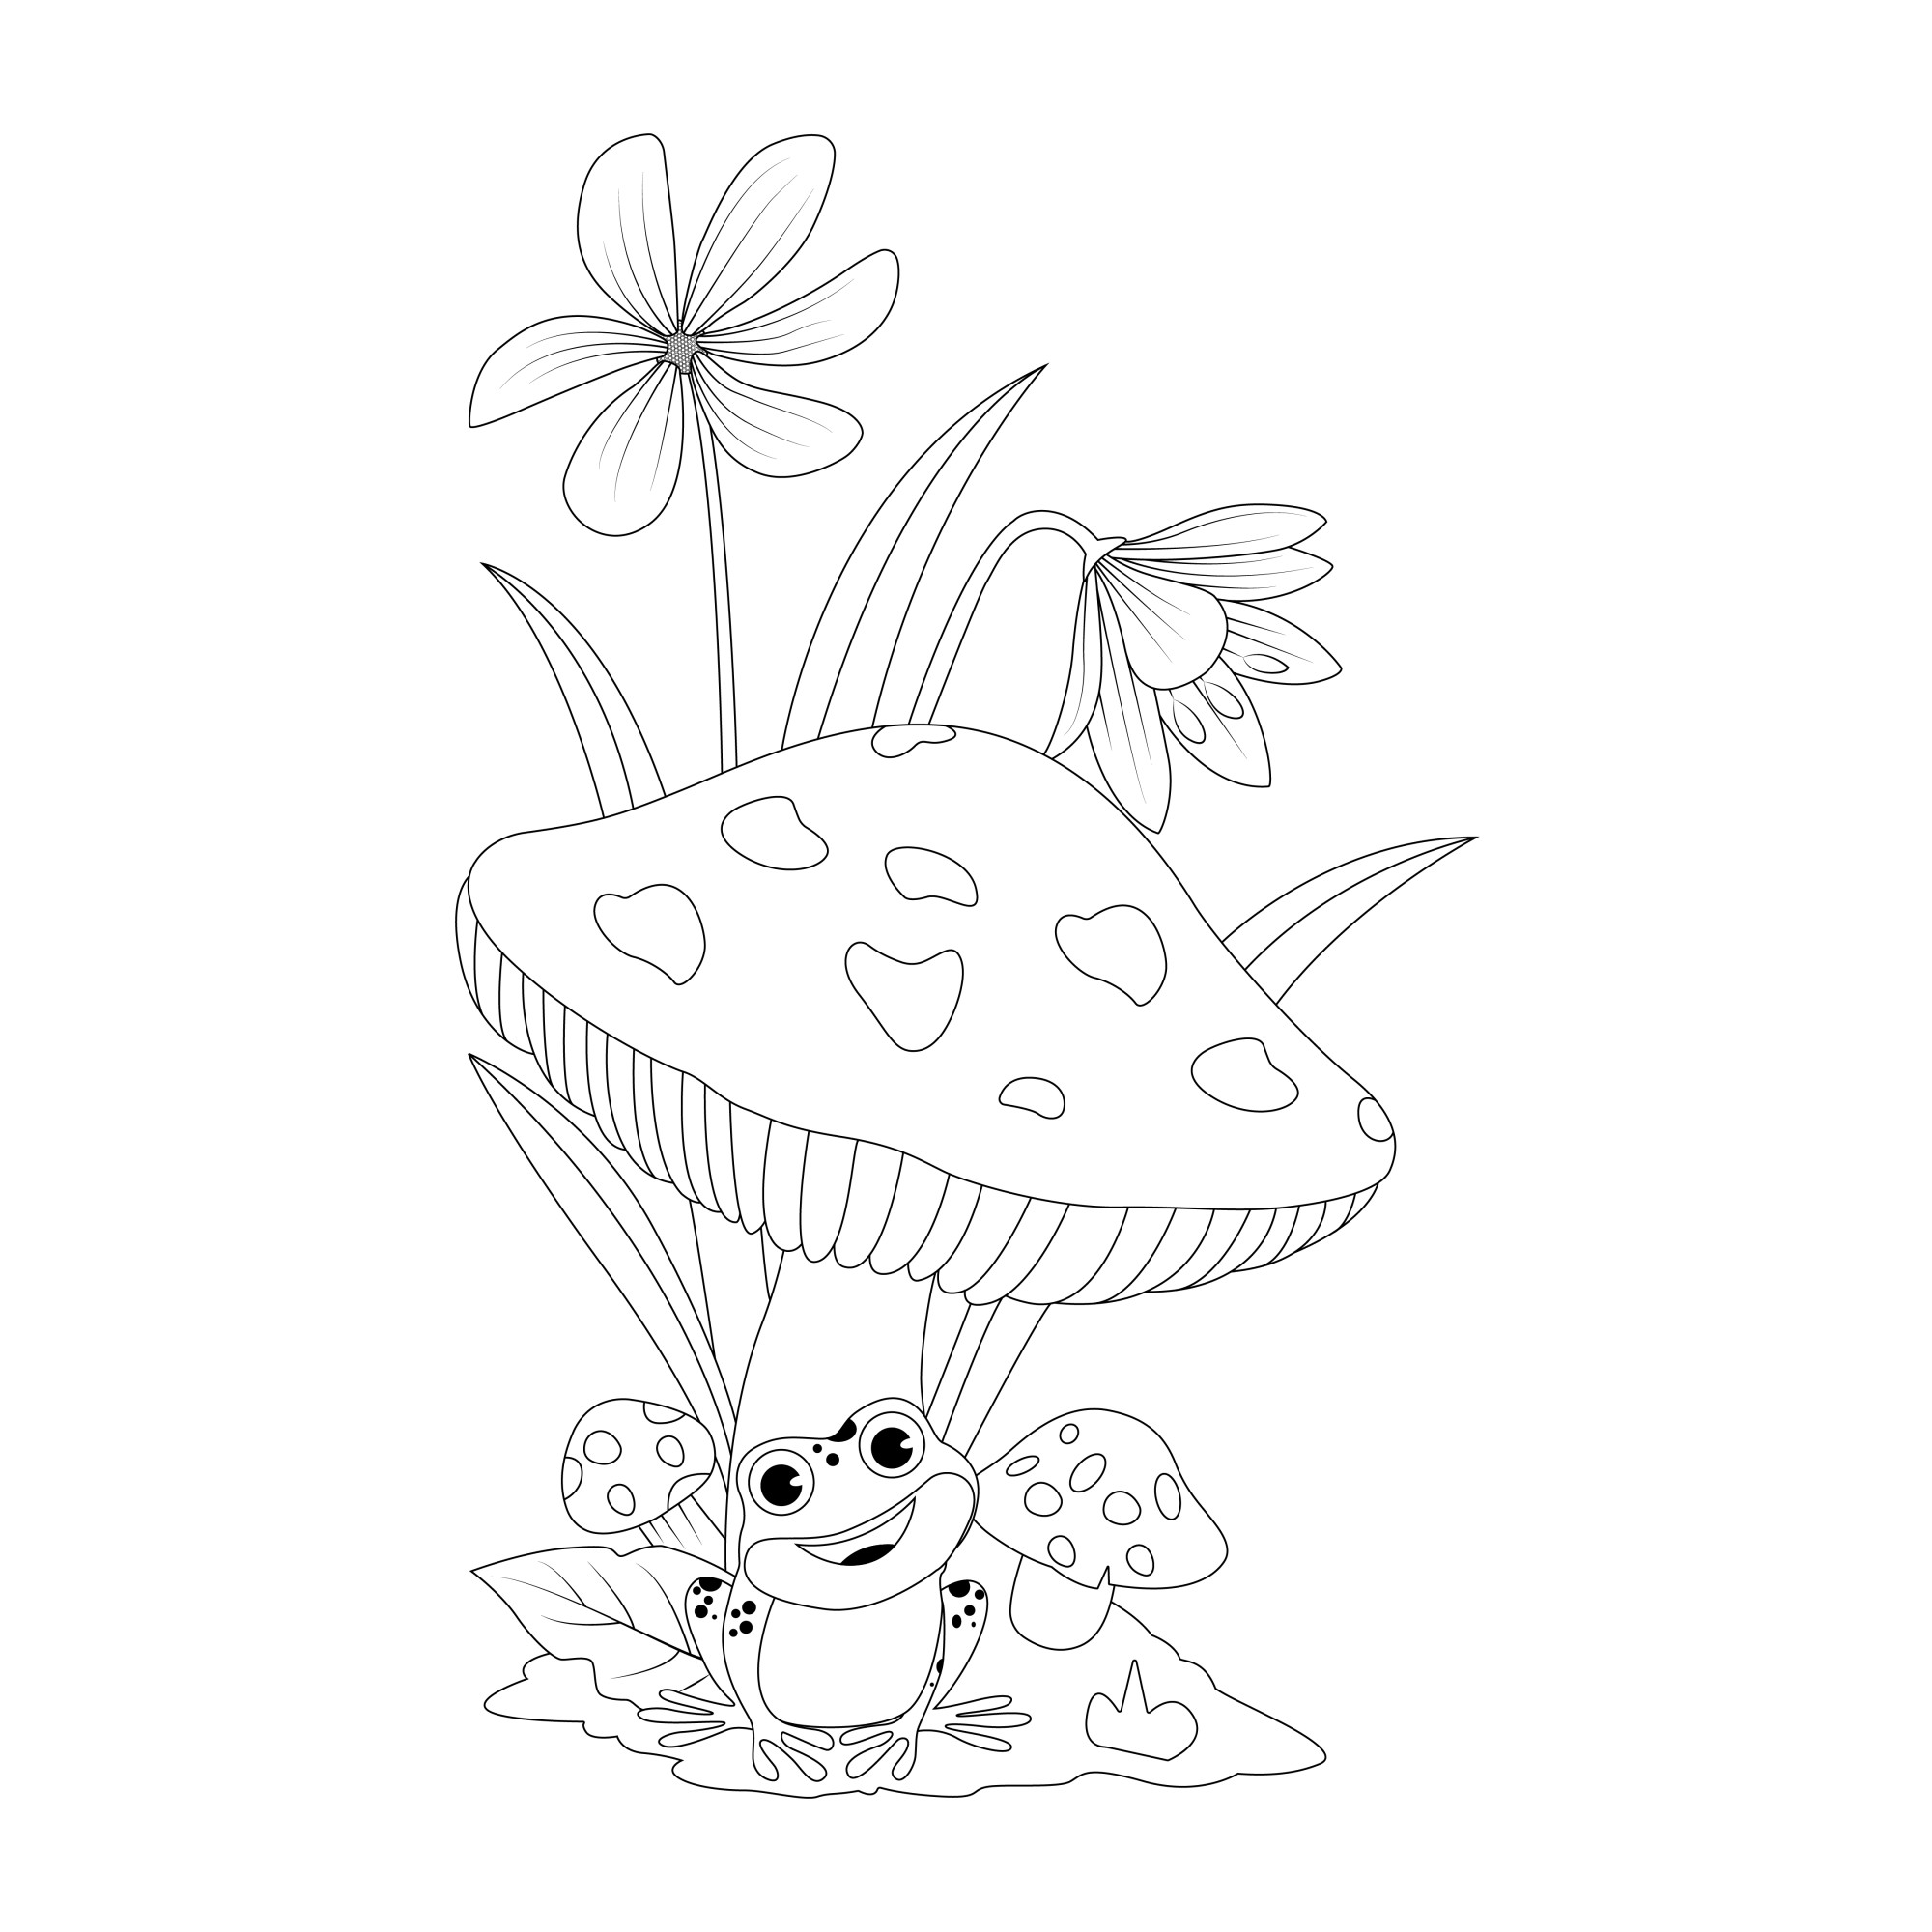 Раскраска для детей: мультяшный гриб с лягушкой и цветами